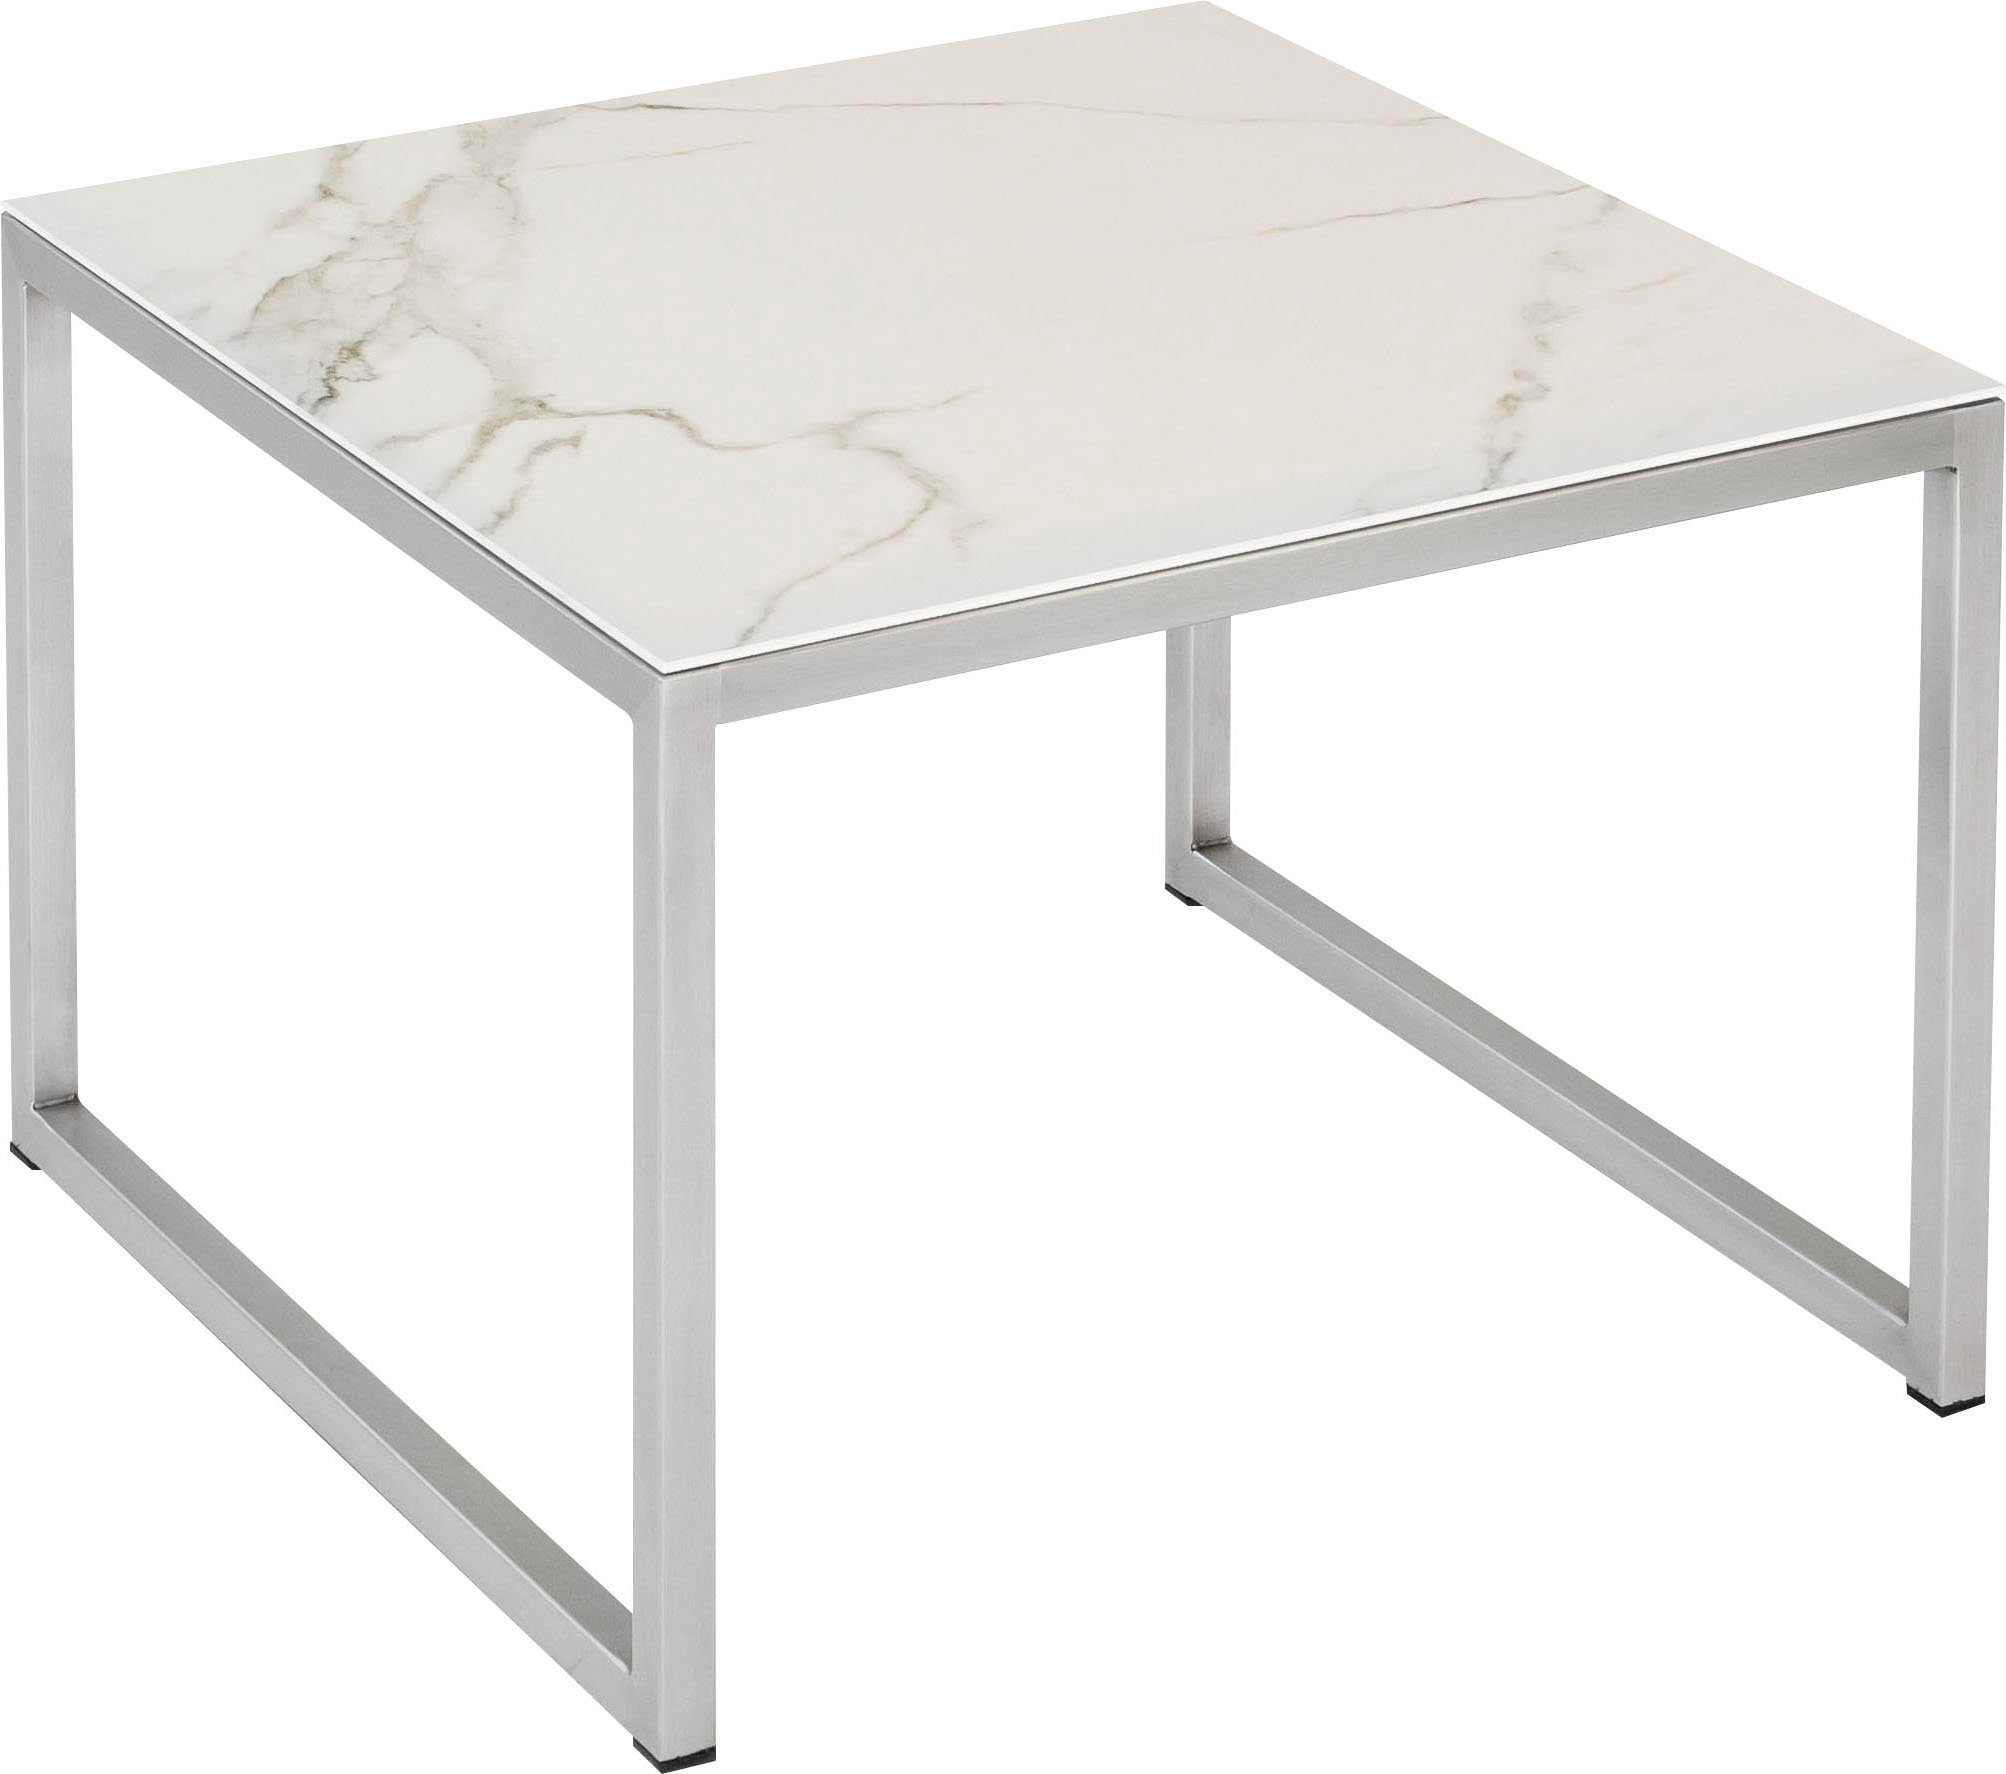 Tischplatte Henke Möbel Beistelltisch, aus hochwertiger Keramik